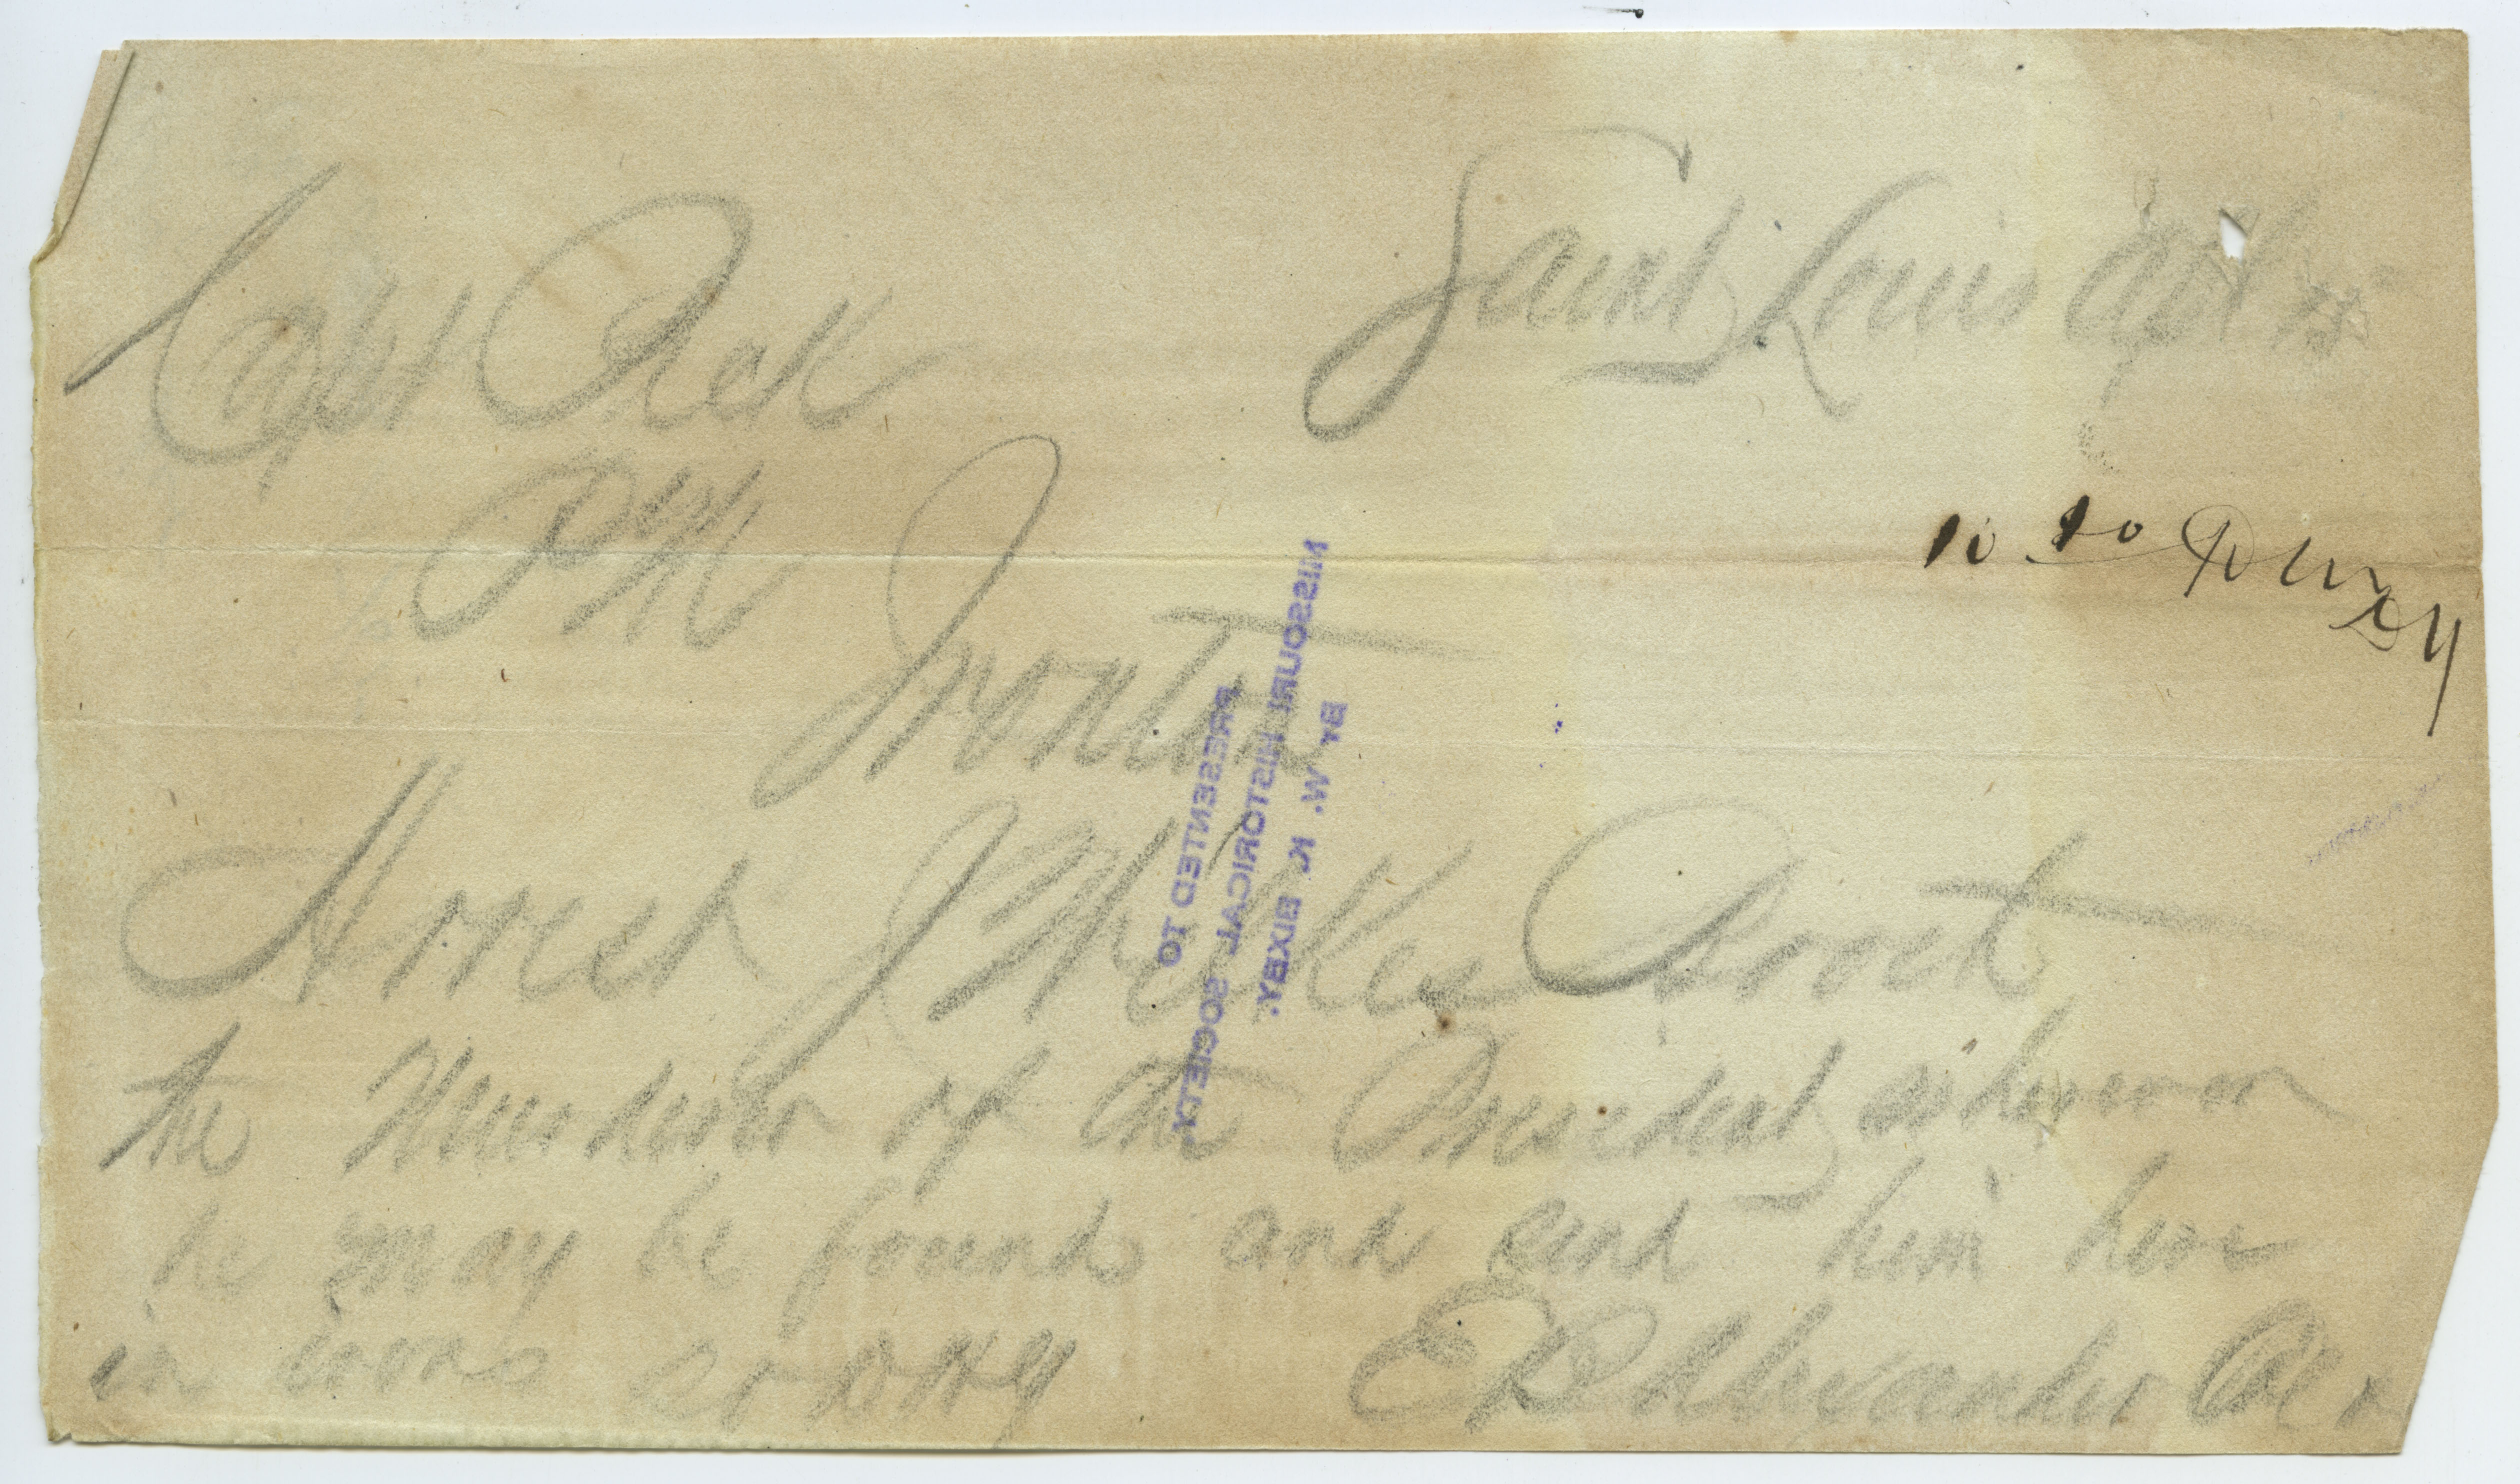 Contemporary copy of telegram of E. B. Alexander, Saint Louis, to Capt. Peck, Ironton, April 15, 1865